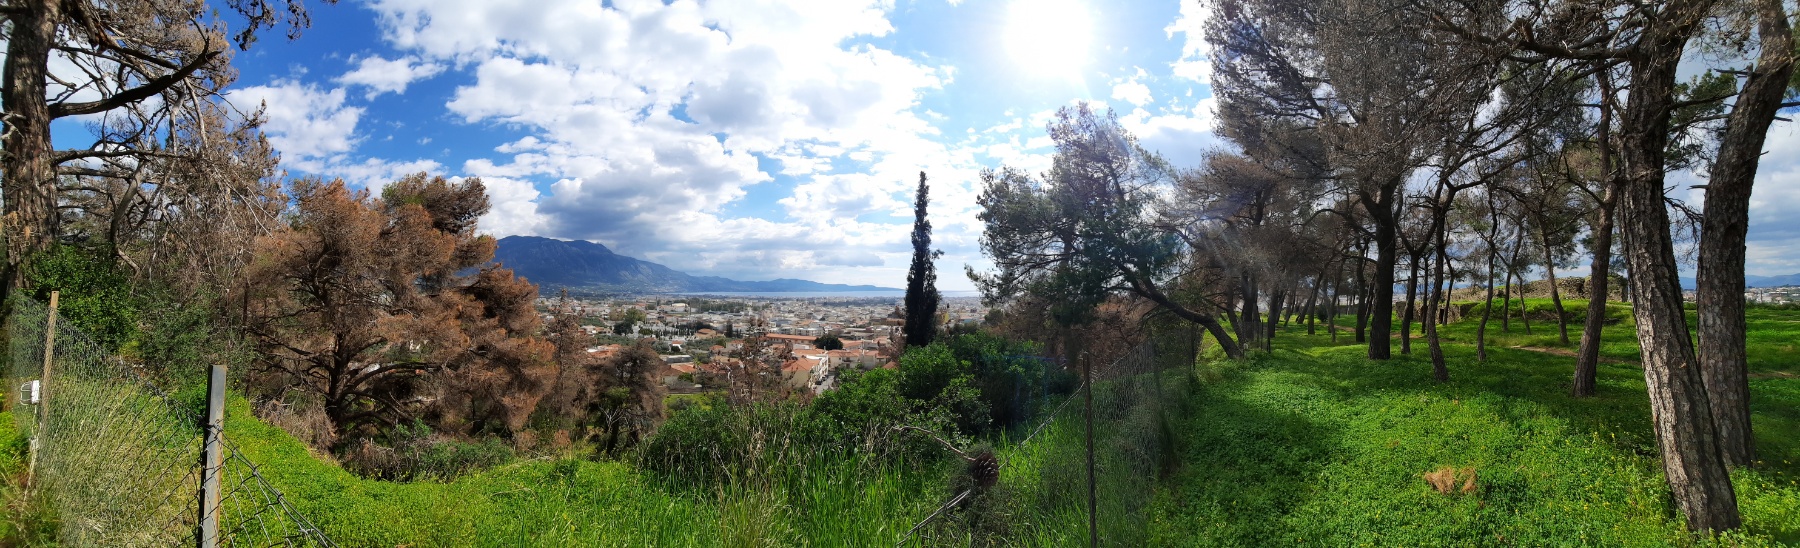 Θέα από το κάστρο της Καλαμάτας